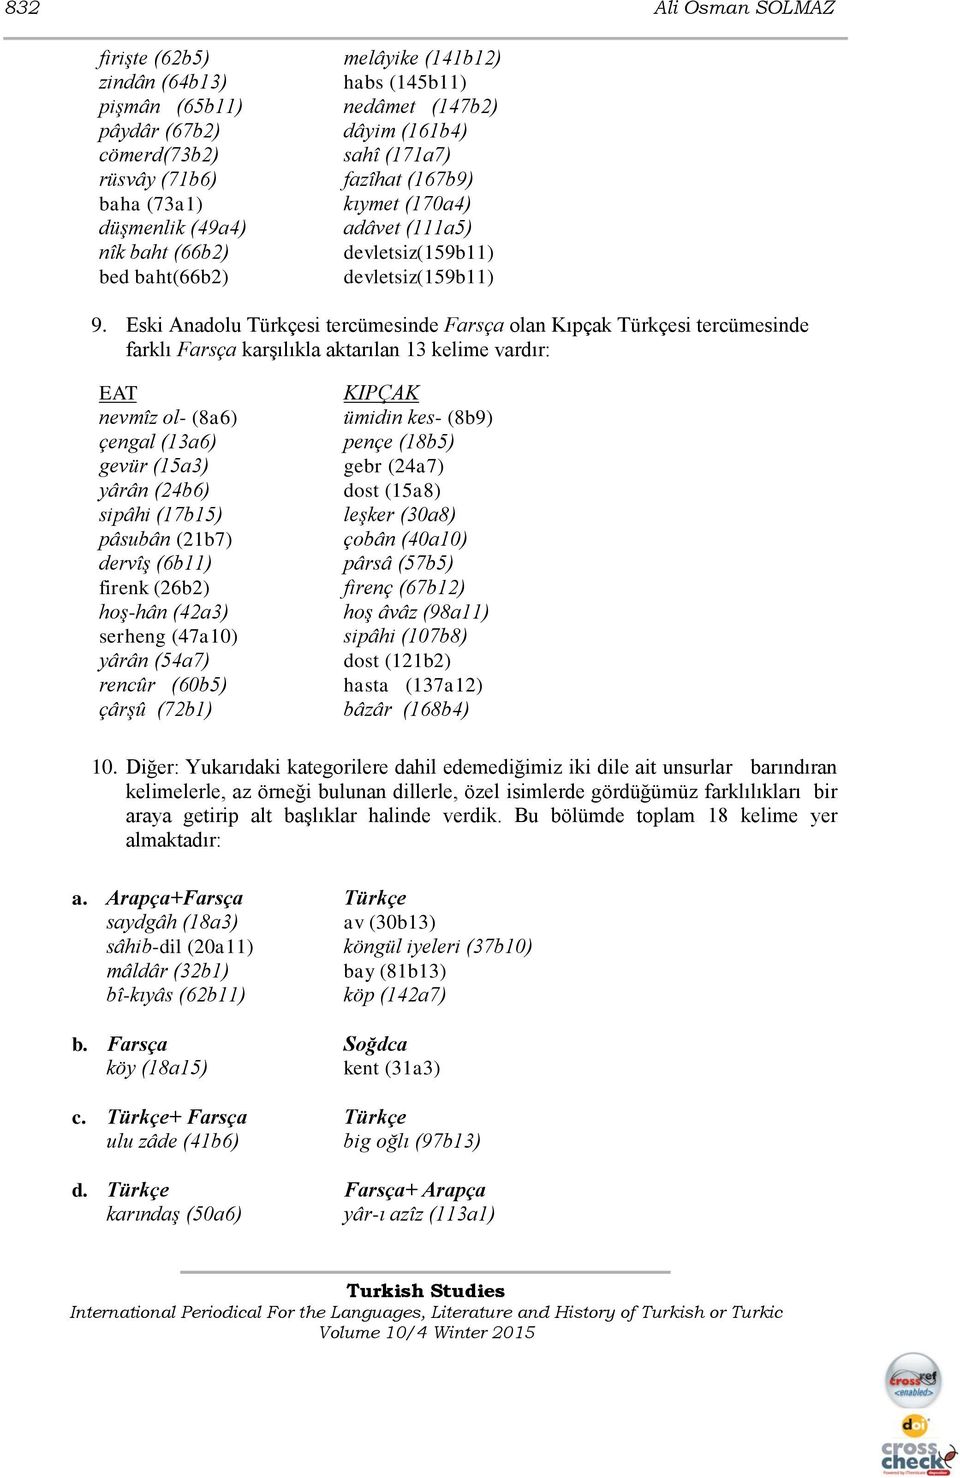 Eski Anadolu Türkçesi tercümesinde Farsça olan Kıpçak Türkçesi tercümesinde farklı Farsça karşılıkla aktarılan 13 kelime vardır: nevmîz ol- (8a6) çengal (13a6) gevür (15a3) yârân (24b6) sipâhi